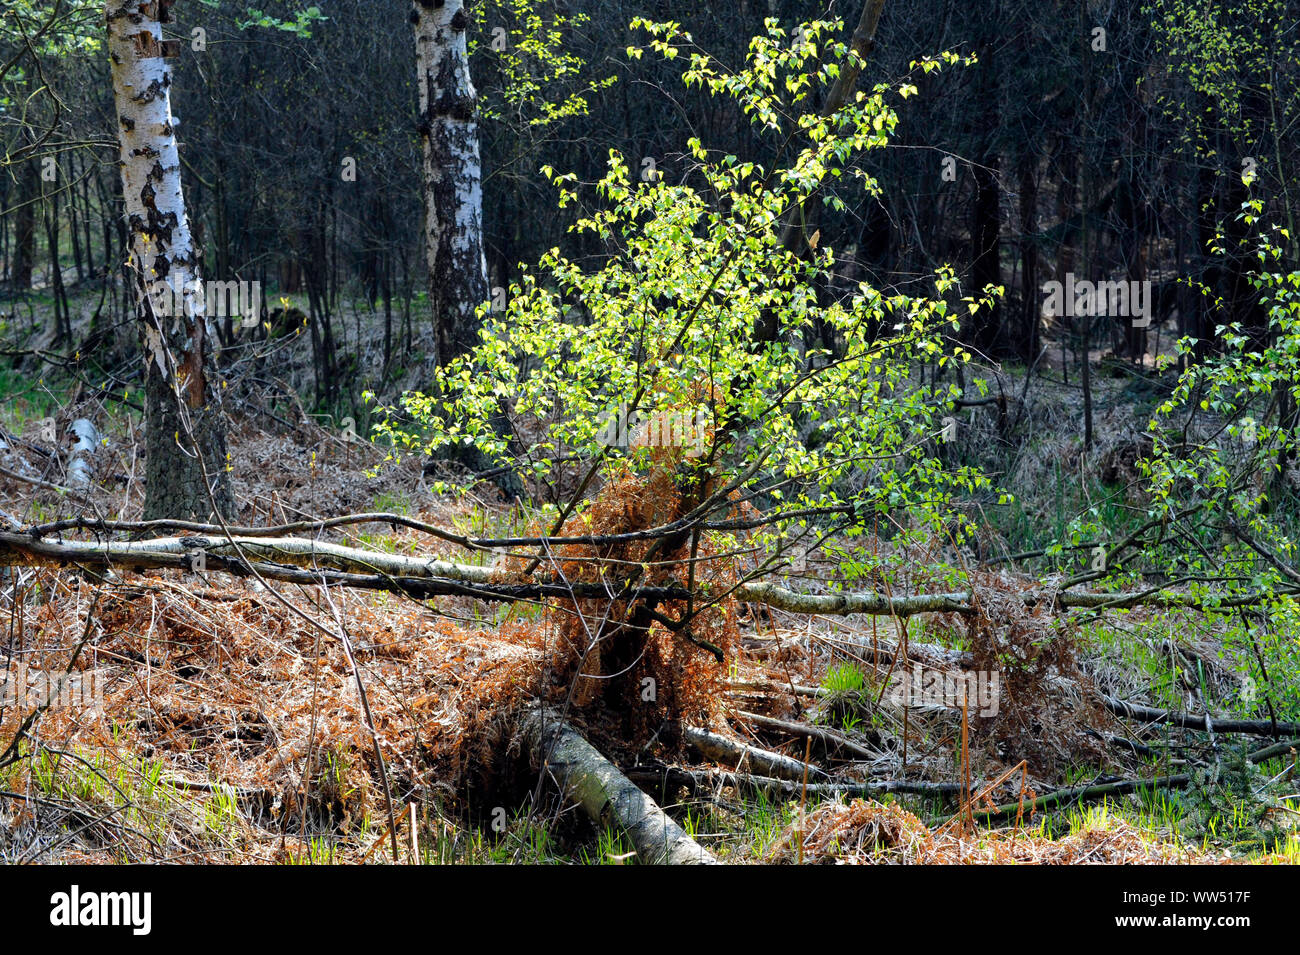 Forêt semi-naturelle, feuillage paysage forêt mixte avec des bouleaux, sous-bois et bois mort Banque D'Images